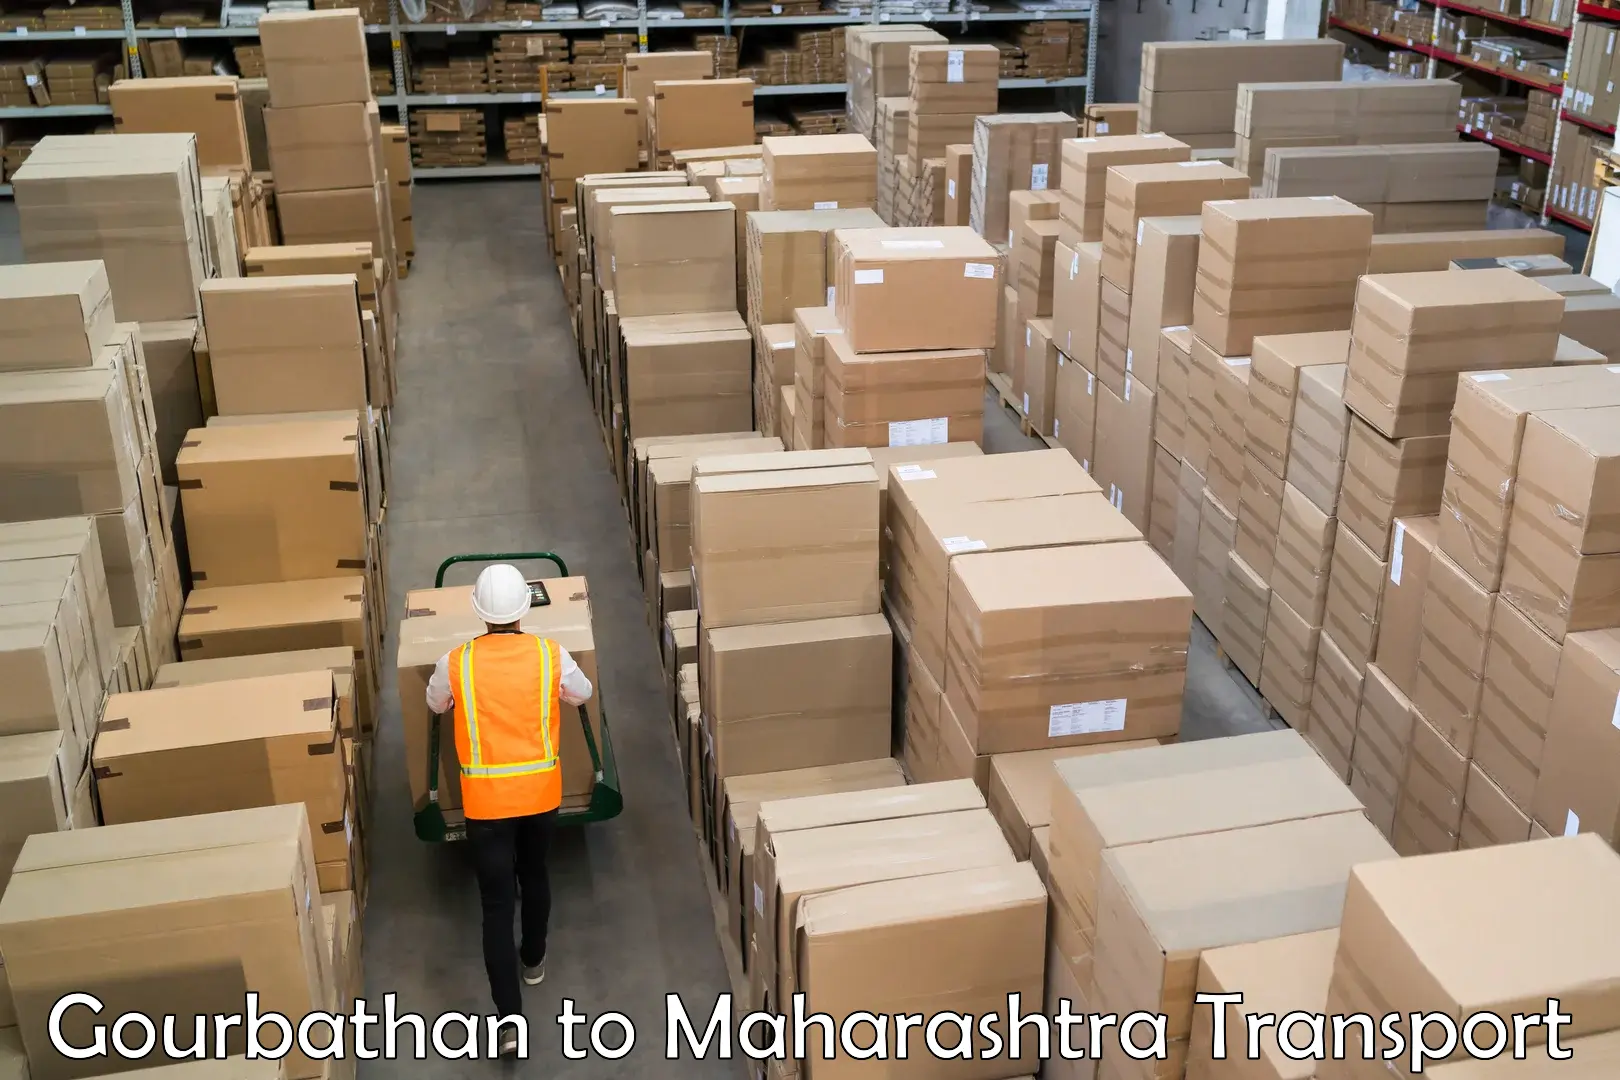 Shipping services Gourbathan to Sillod